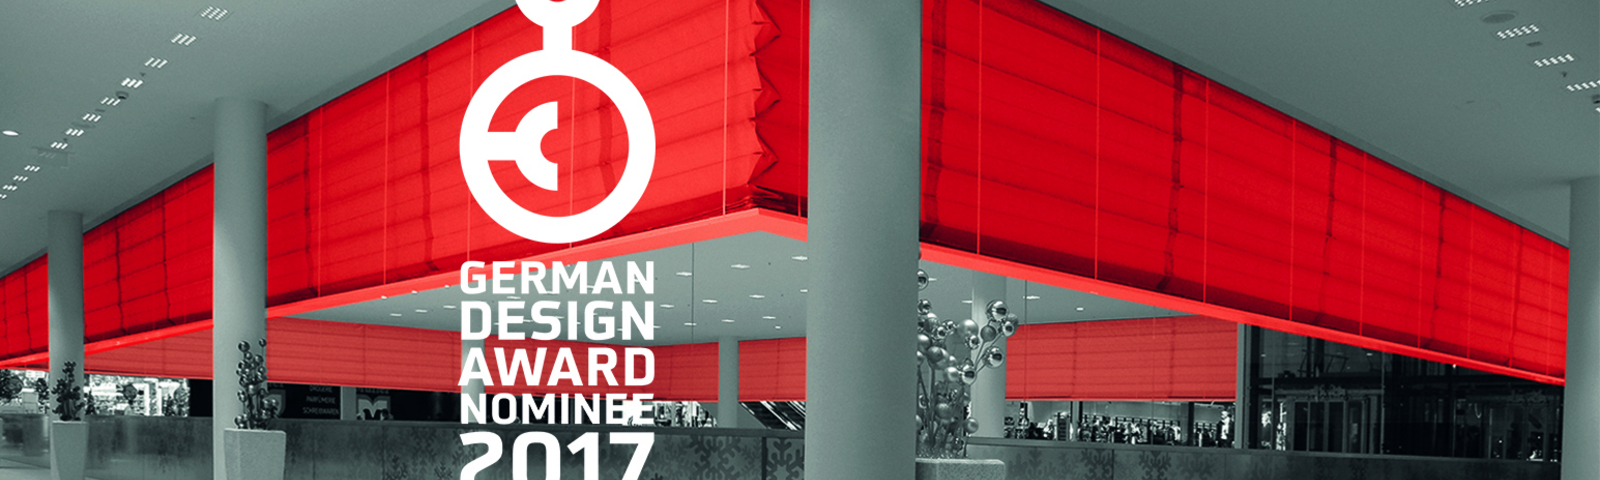 Brandscherm voor German Design Award 2017 genomineerd